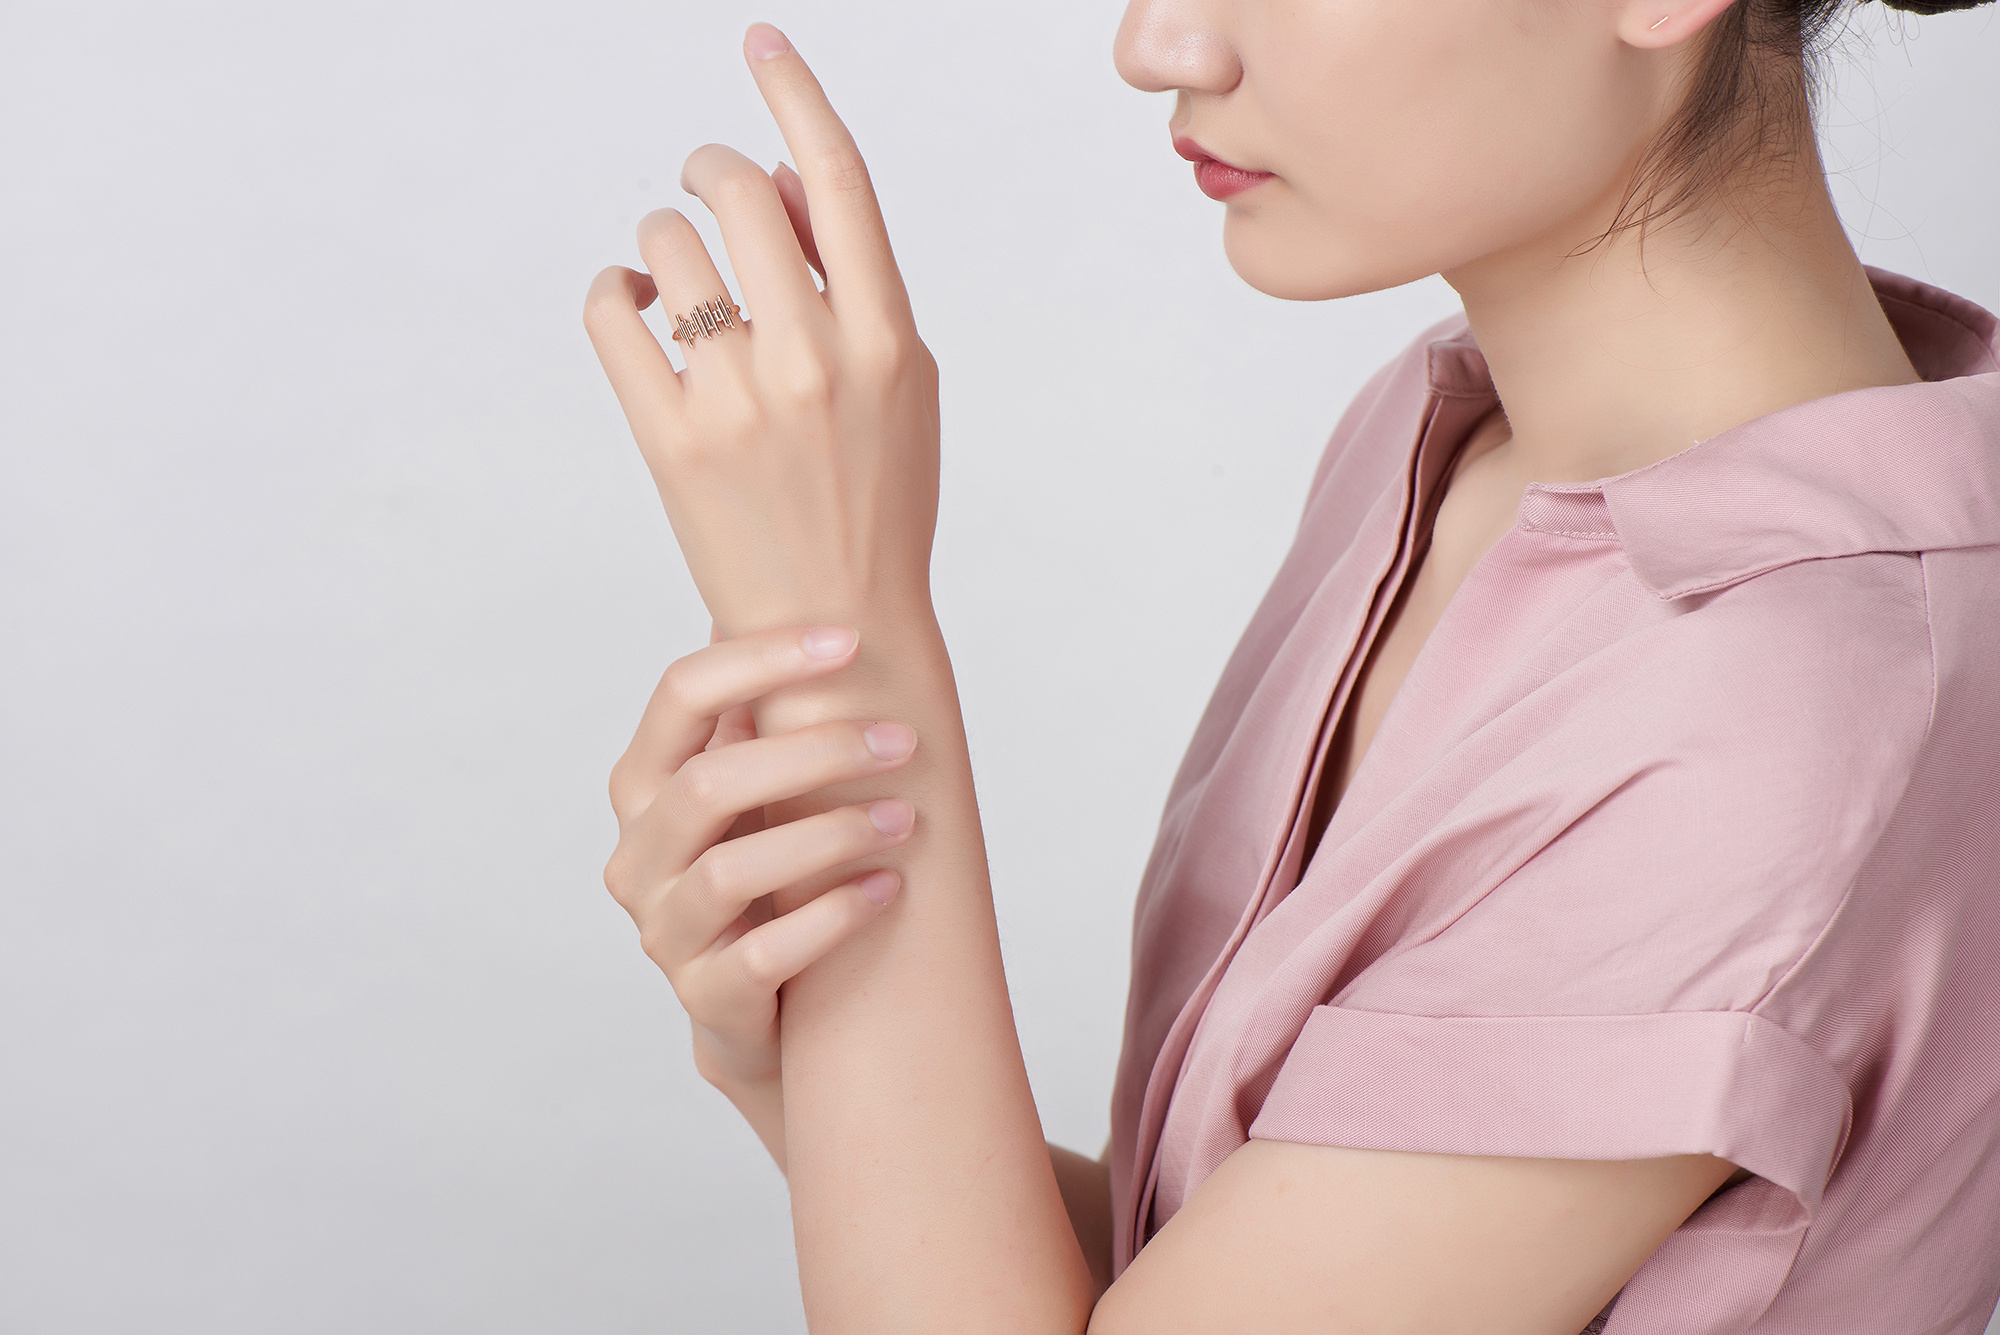 仿真手模型硅胶女性手模S1手部模型医疗绘画假手拍摄展示手模道具-阿里巴巴